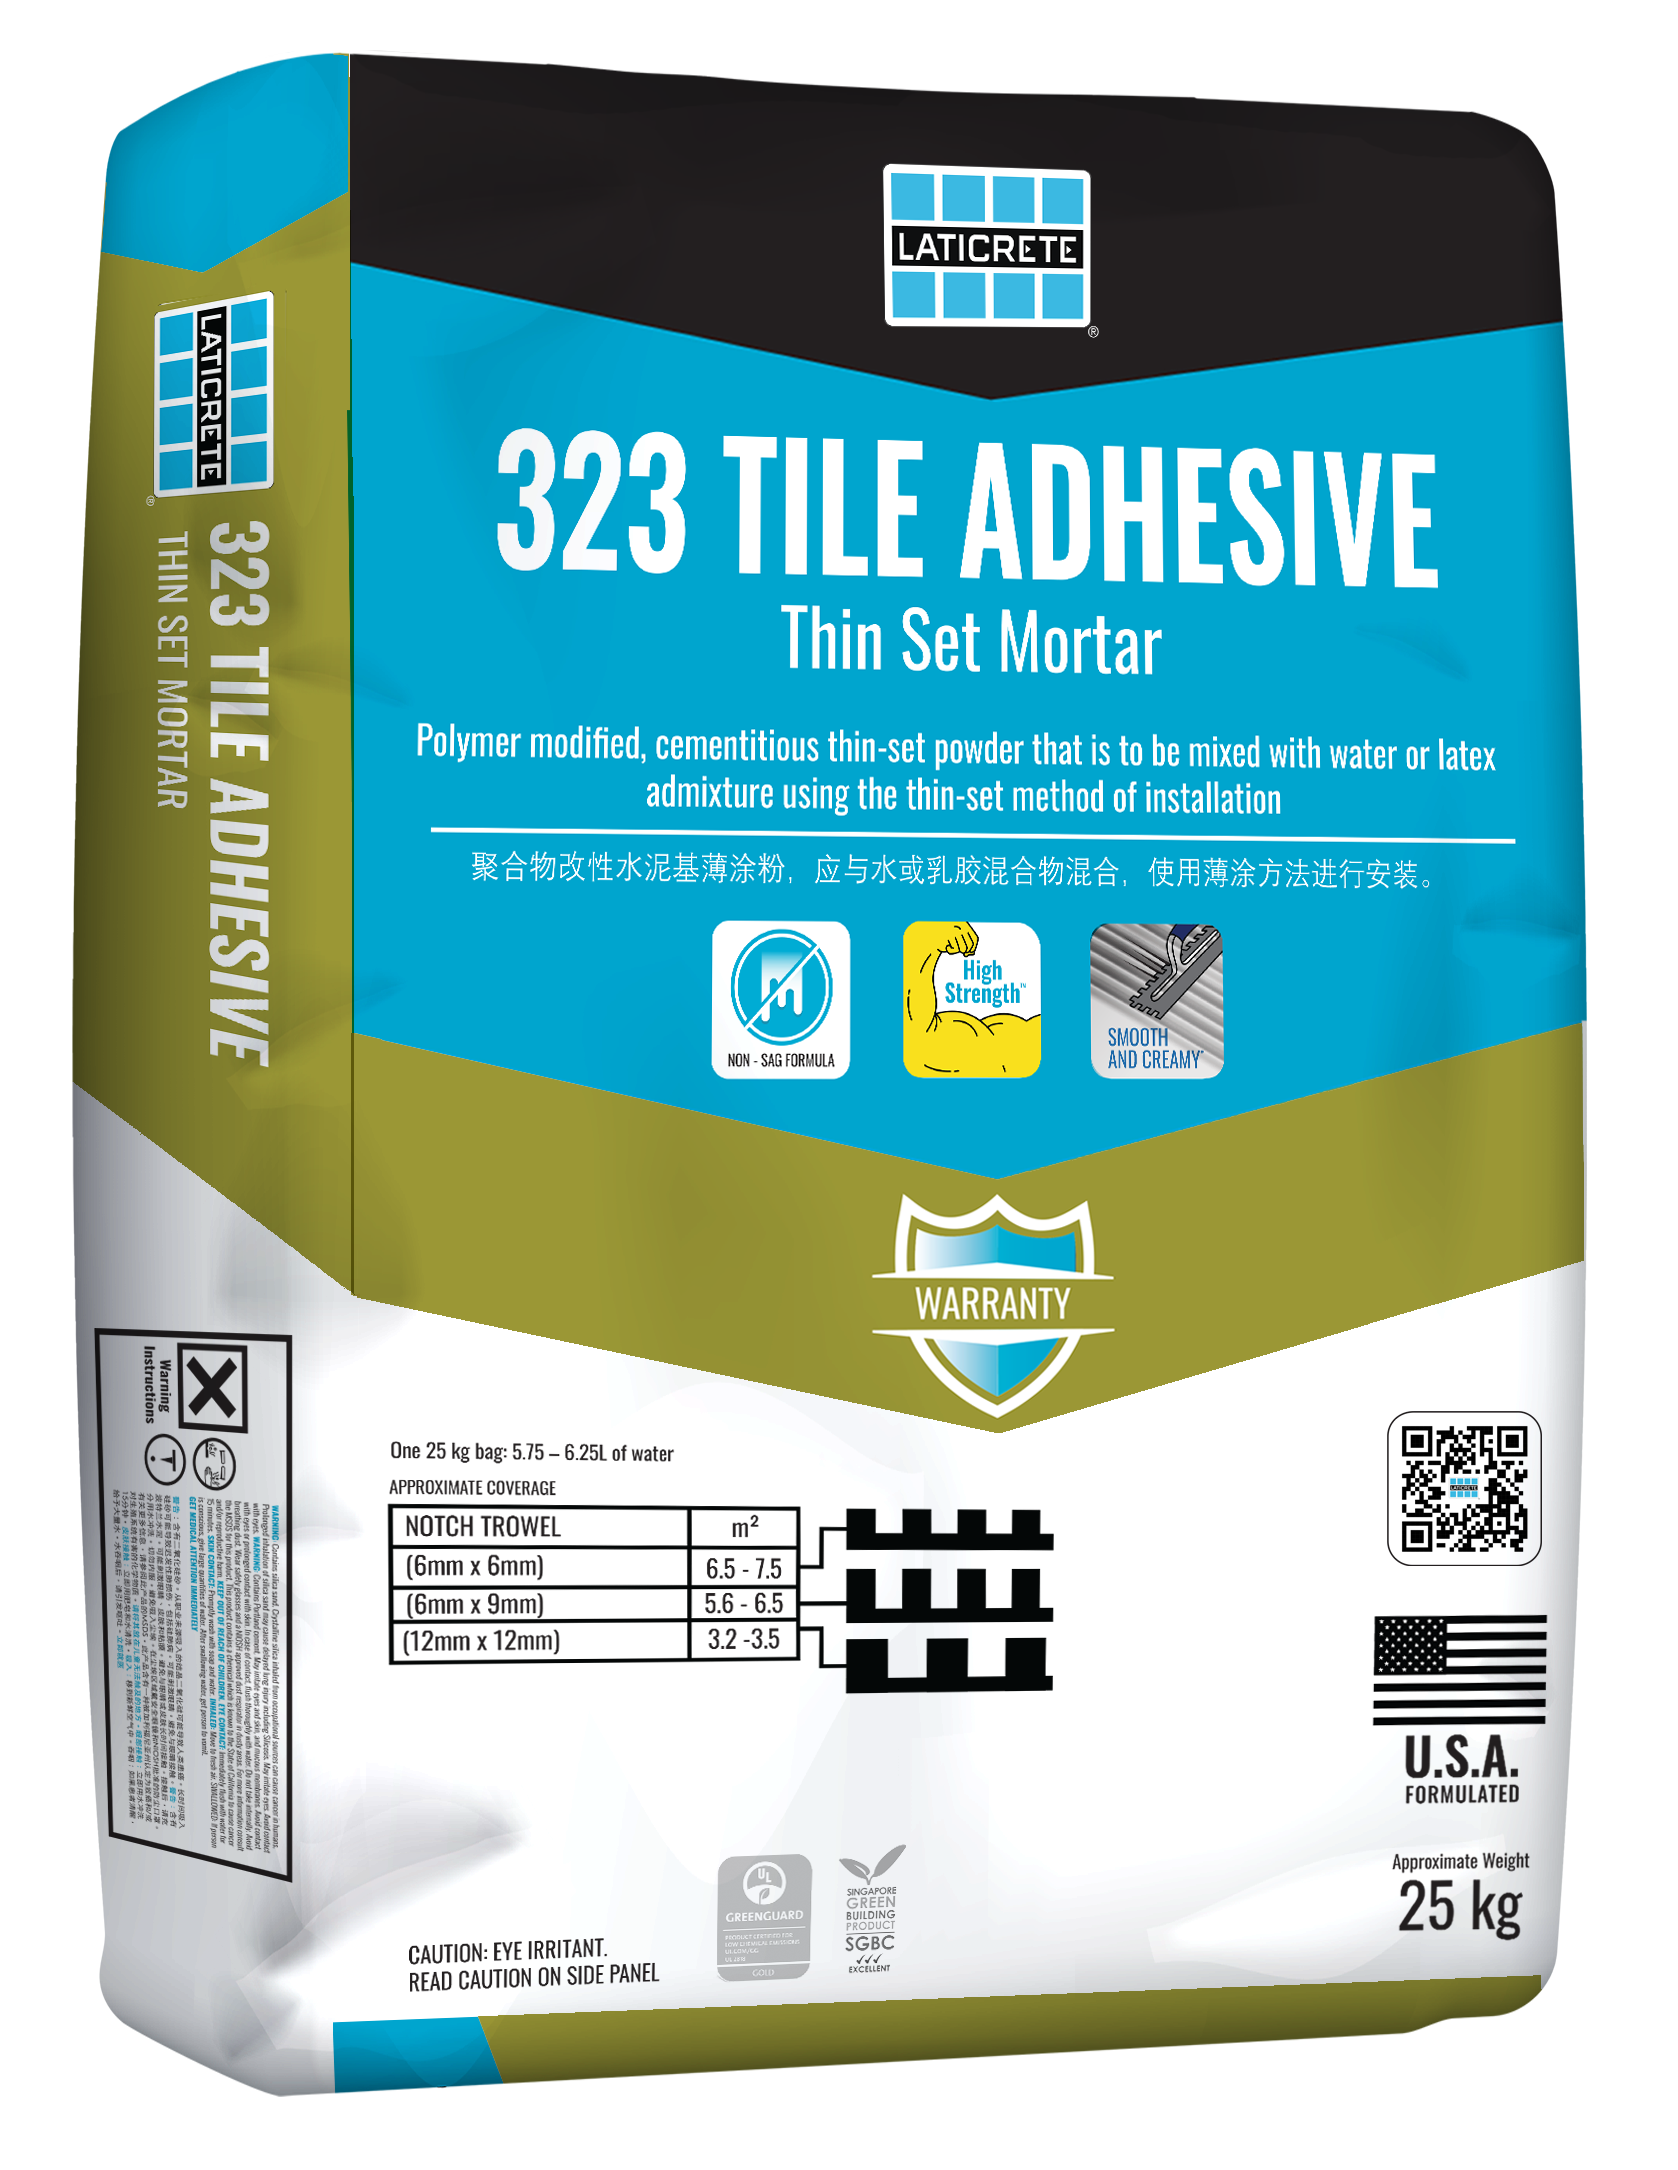 323 Tile Adhesive